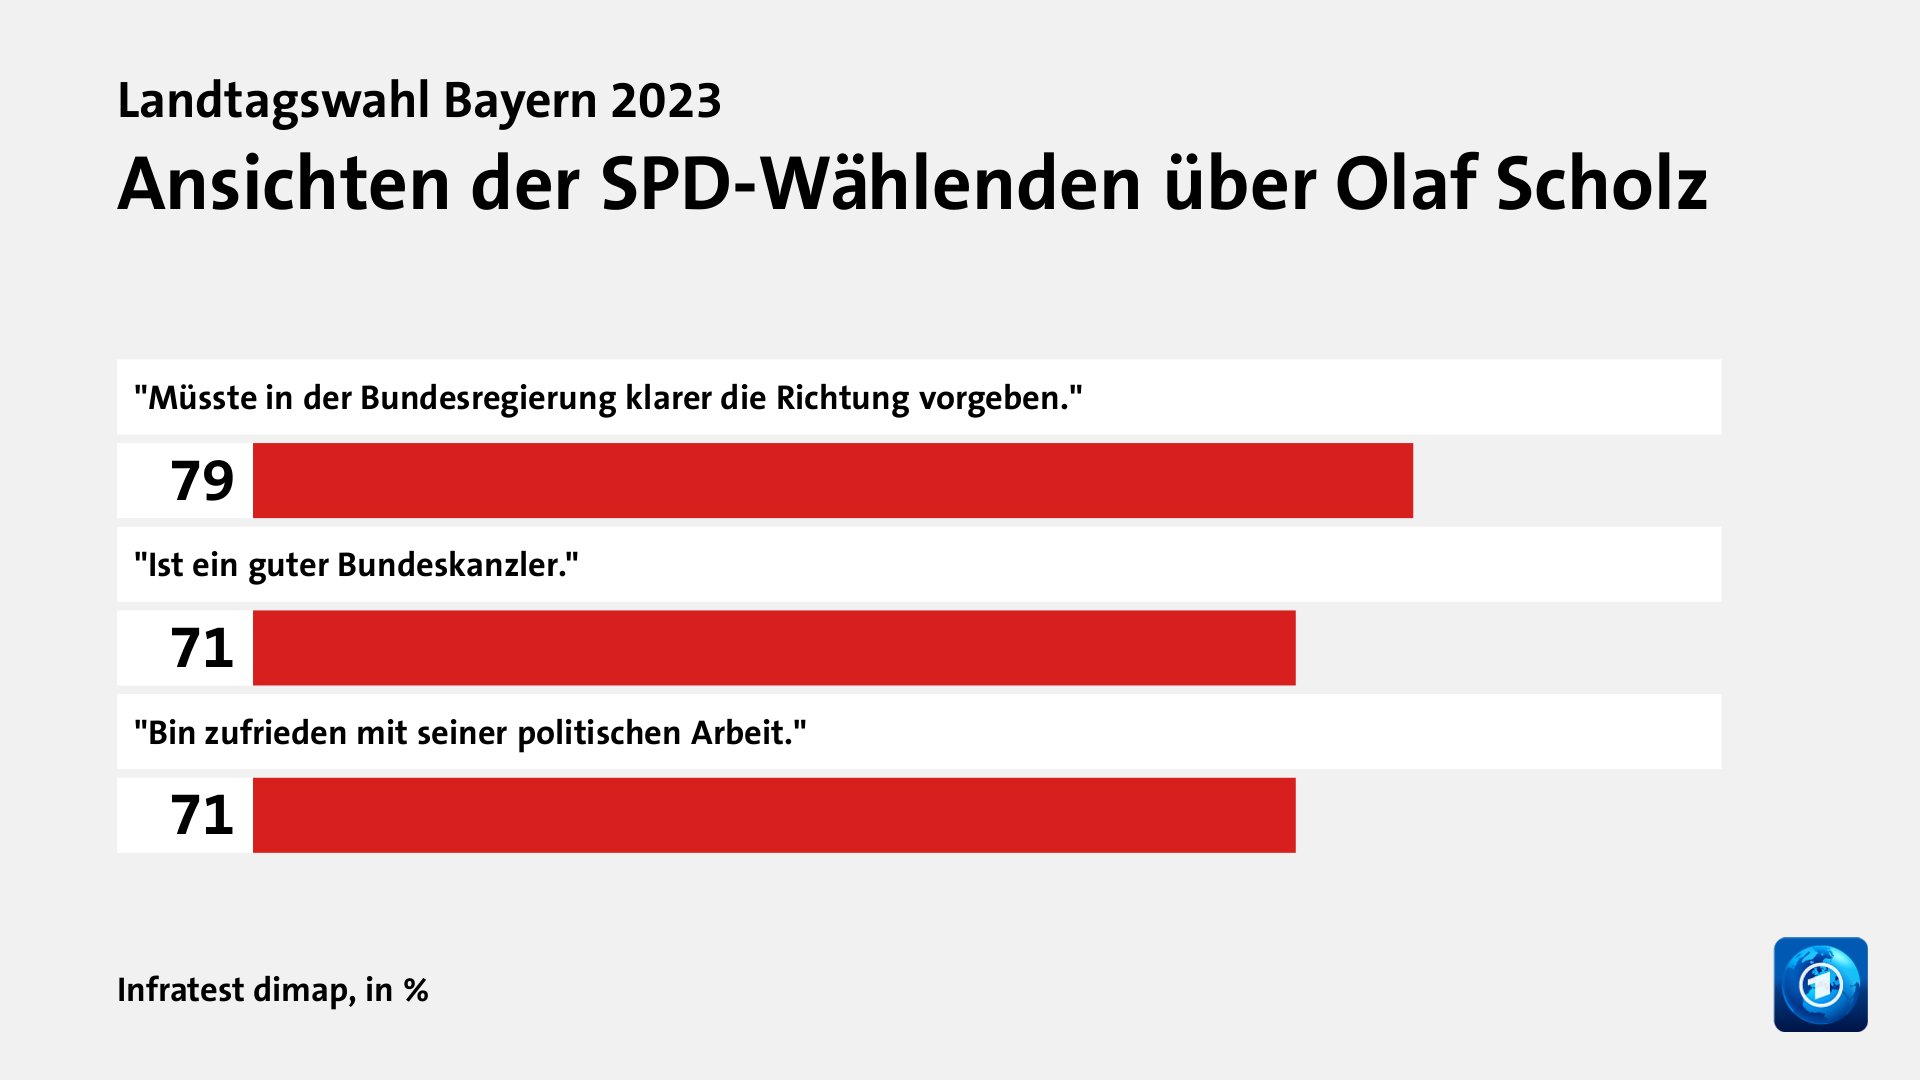 Ansichten der SPD-Wählenden über Olaf Scholz, in %: 